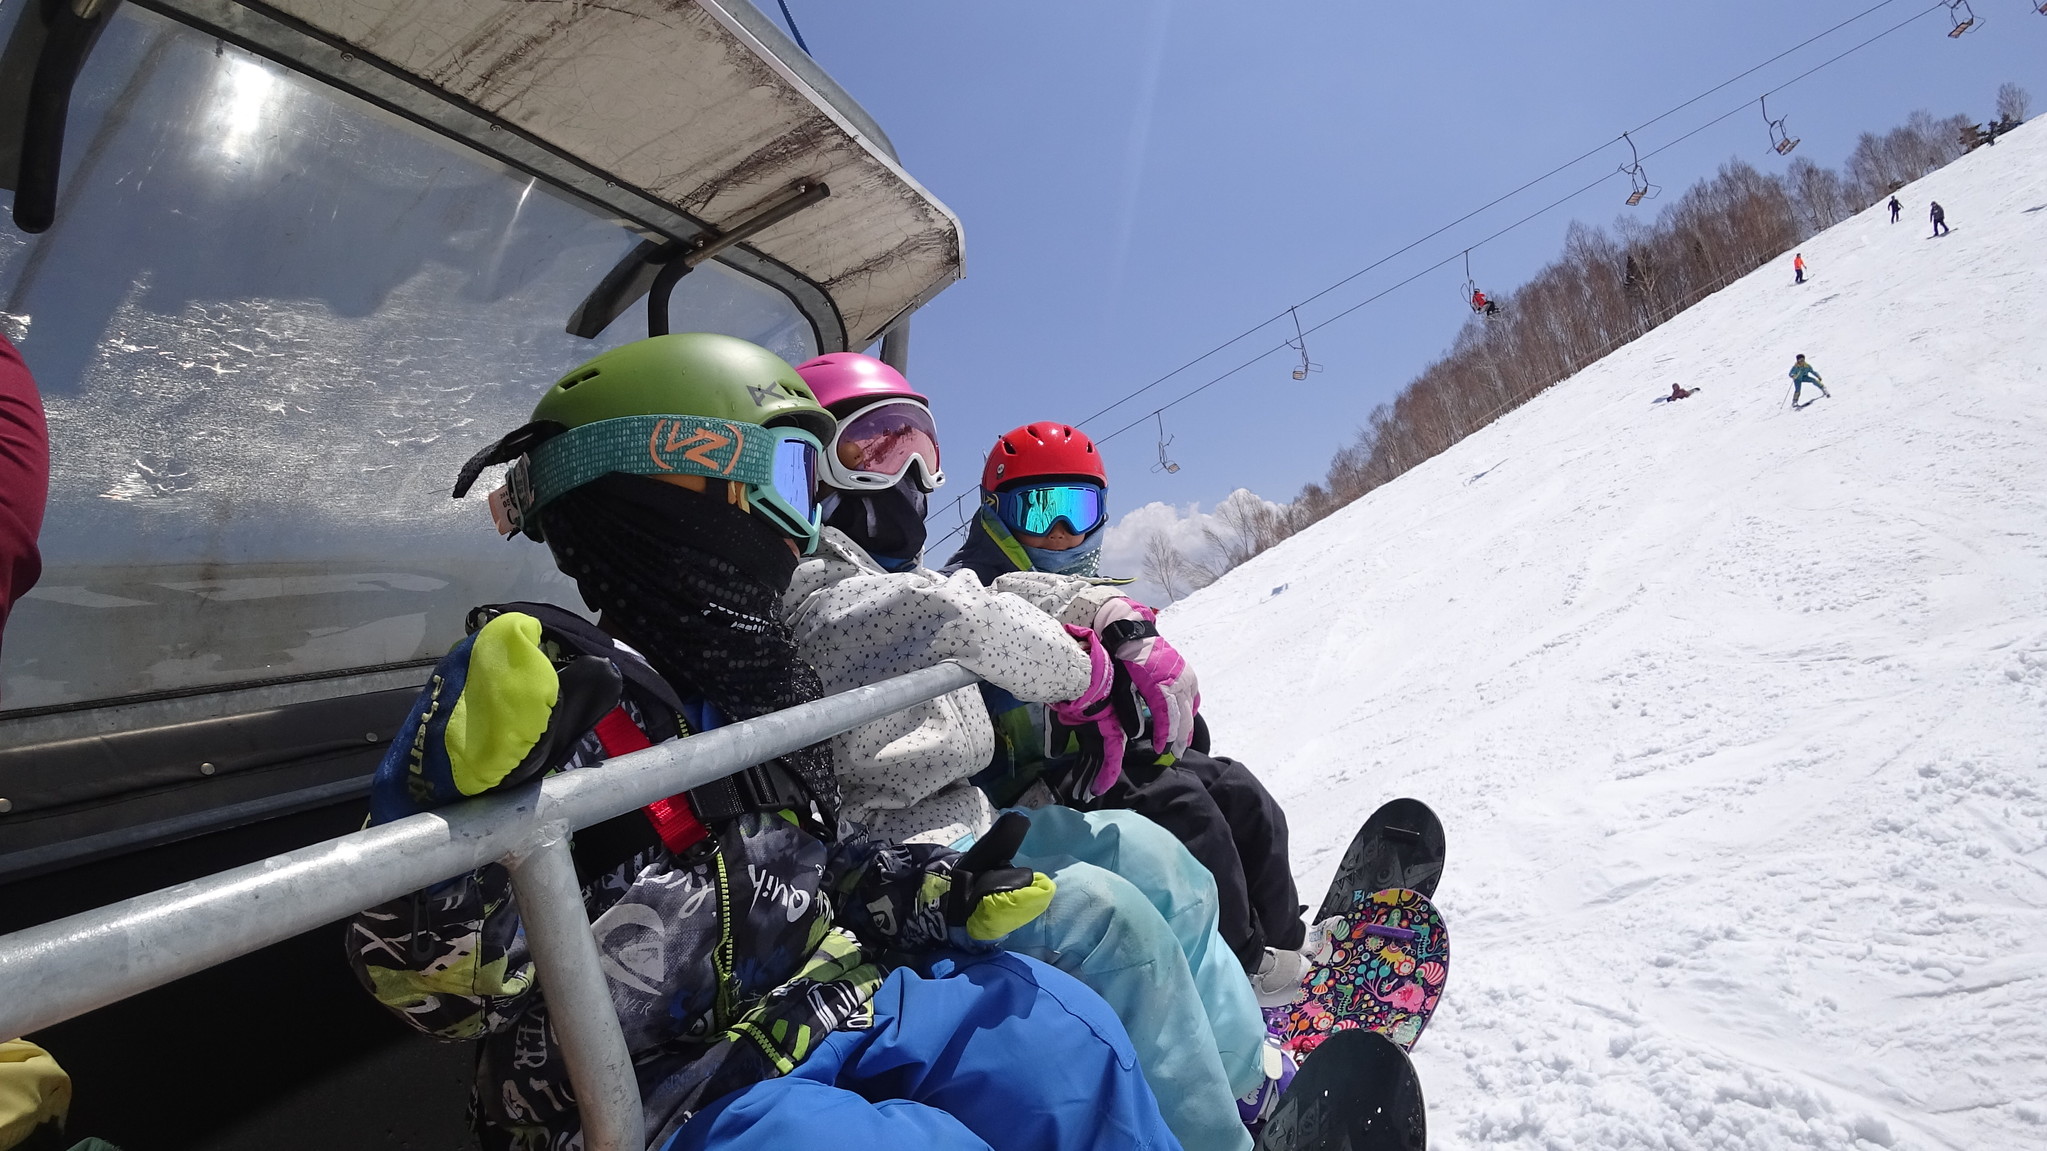 スノーシーズン到来 今年のお子様のスキー スノーボードはシーズンレンタルしてみませんか スノーキッズ合同会社のプレスリリース